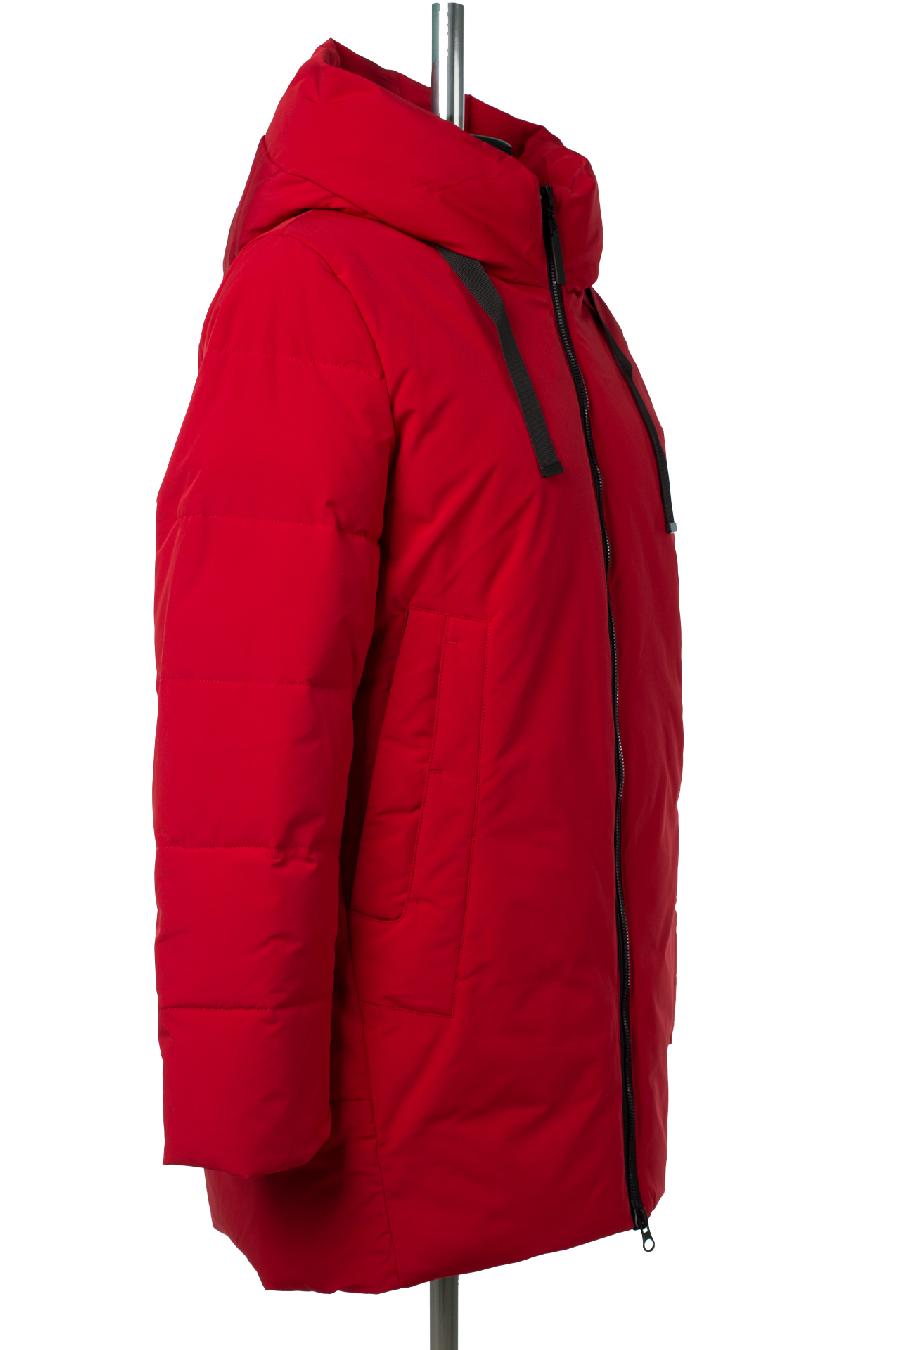 05-2045 Куртка женская зимняя (Биопух 300) Плащевка красный